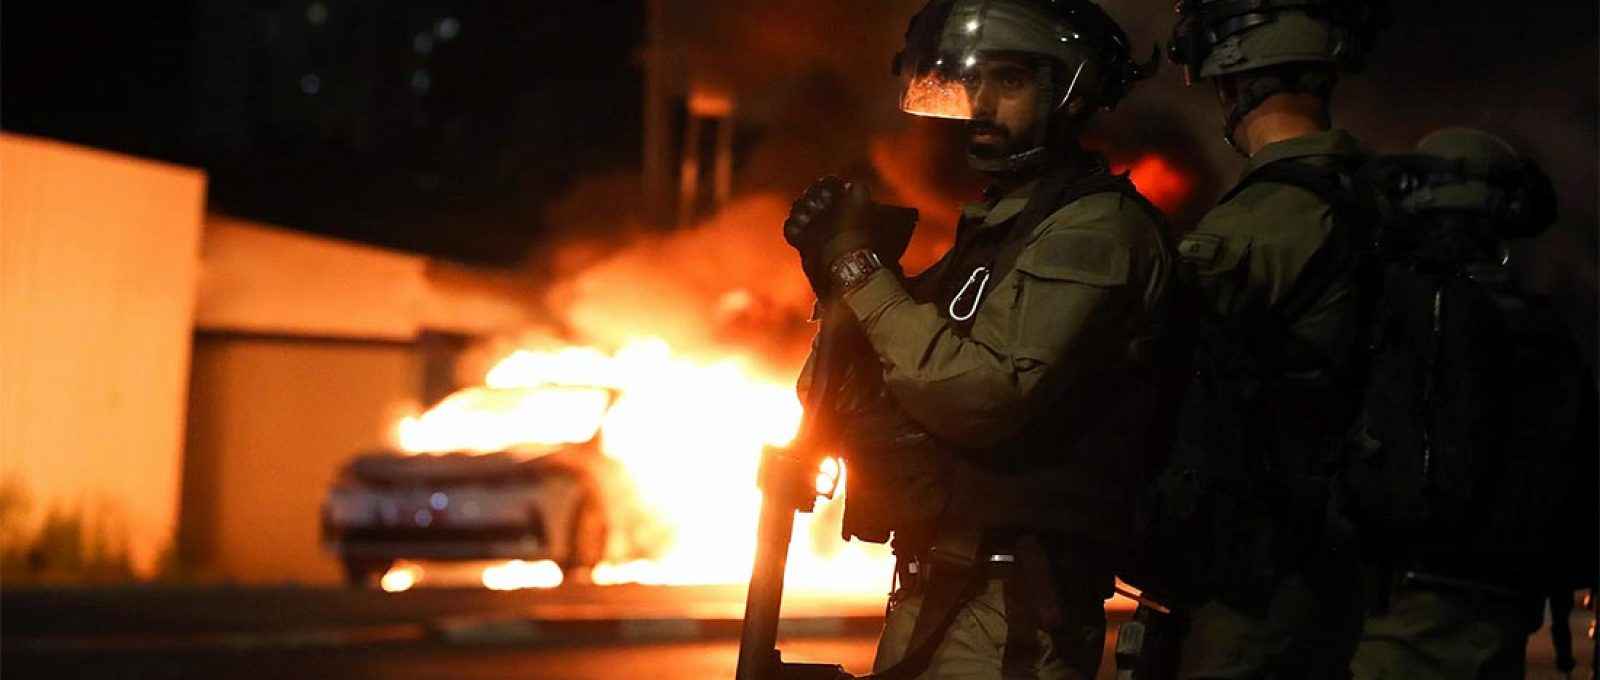 Membros da força de segurança israelense perto de um carro da polícia em chamas durante confrontos entre a polícia israelense e membros da minoria árabe na cidade árabe-judaica de Lod, Israel, 12 de maio de 2021 (Foto: Ammar Awad/Reuters).